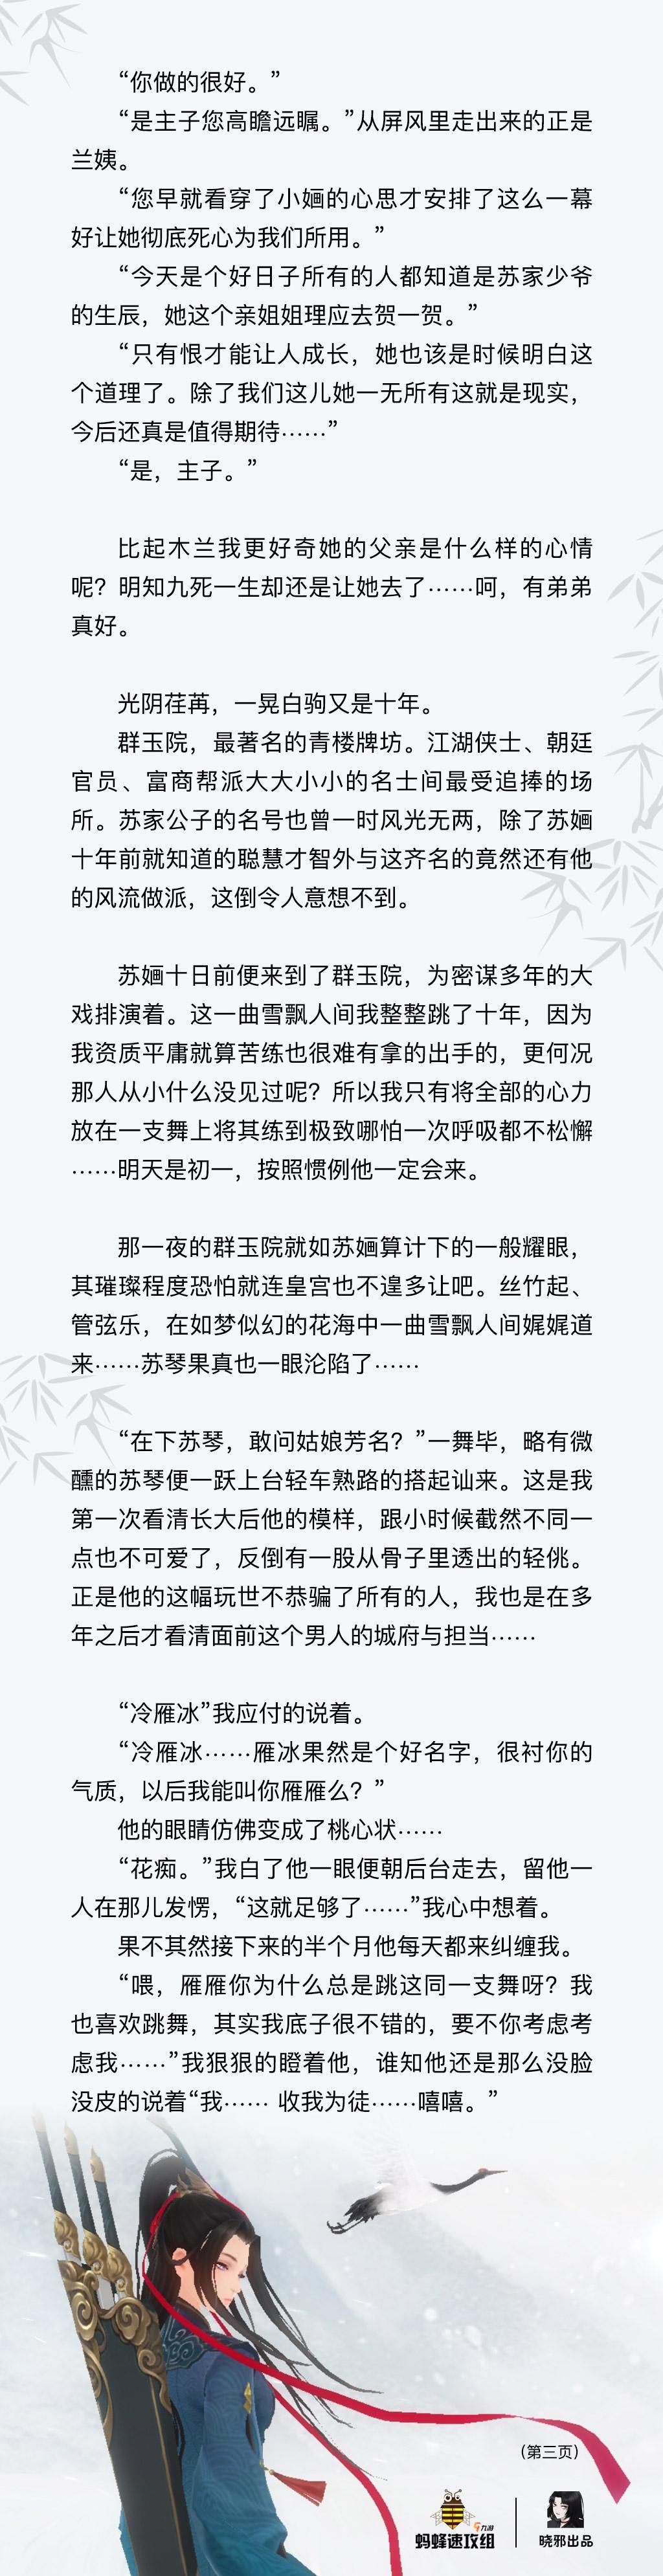 【同人】新笑傲江湖同人故事系列三武当：雪飘人间_2